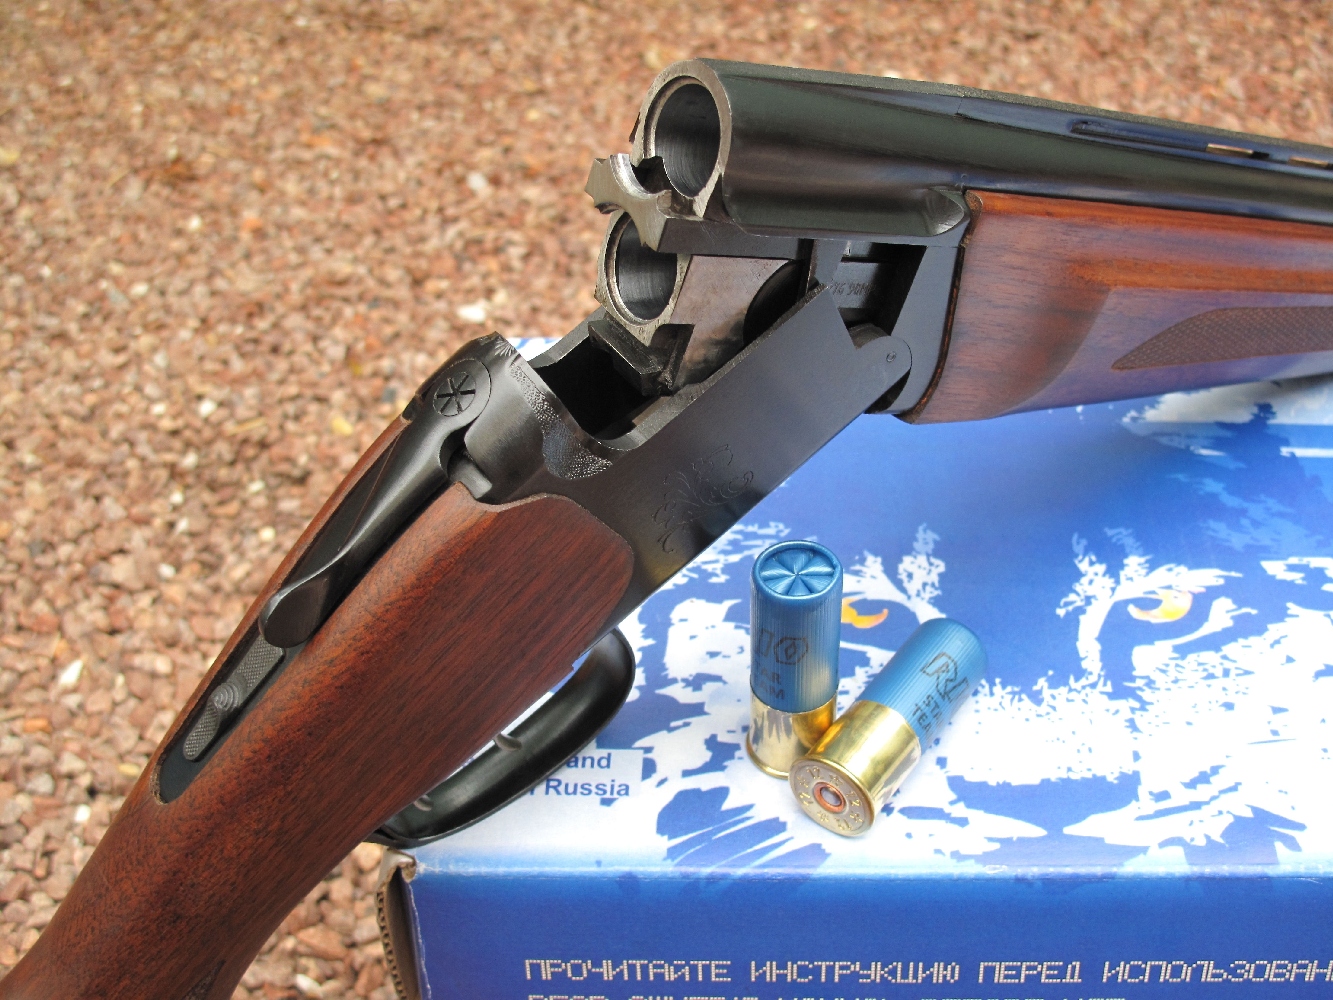 Nous complétons notre banc d’essai de la gamme des fusils russes Baïkal avec le test de ce modèle à deux canons superposés MP-27 (également appelé IJ-27 ou IZH-27) dans sa version MP-27M avec extracteurs, double détente et monture en noyer huilé, chambré en calibre 12/76 (Magnum).